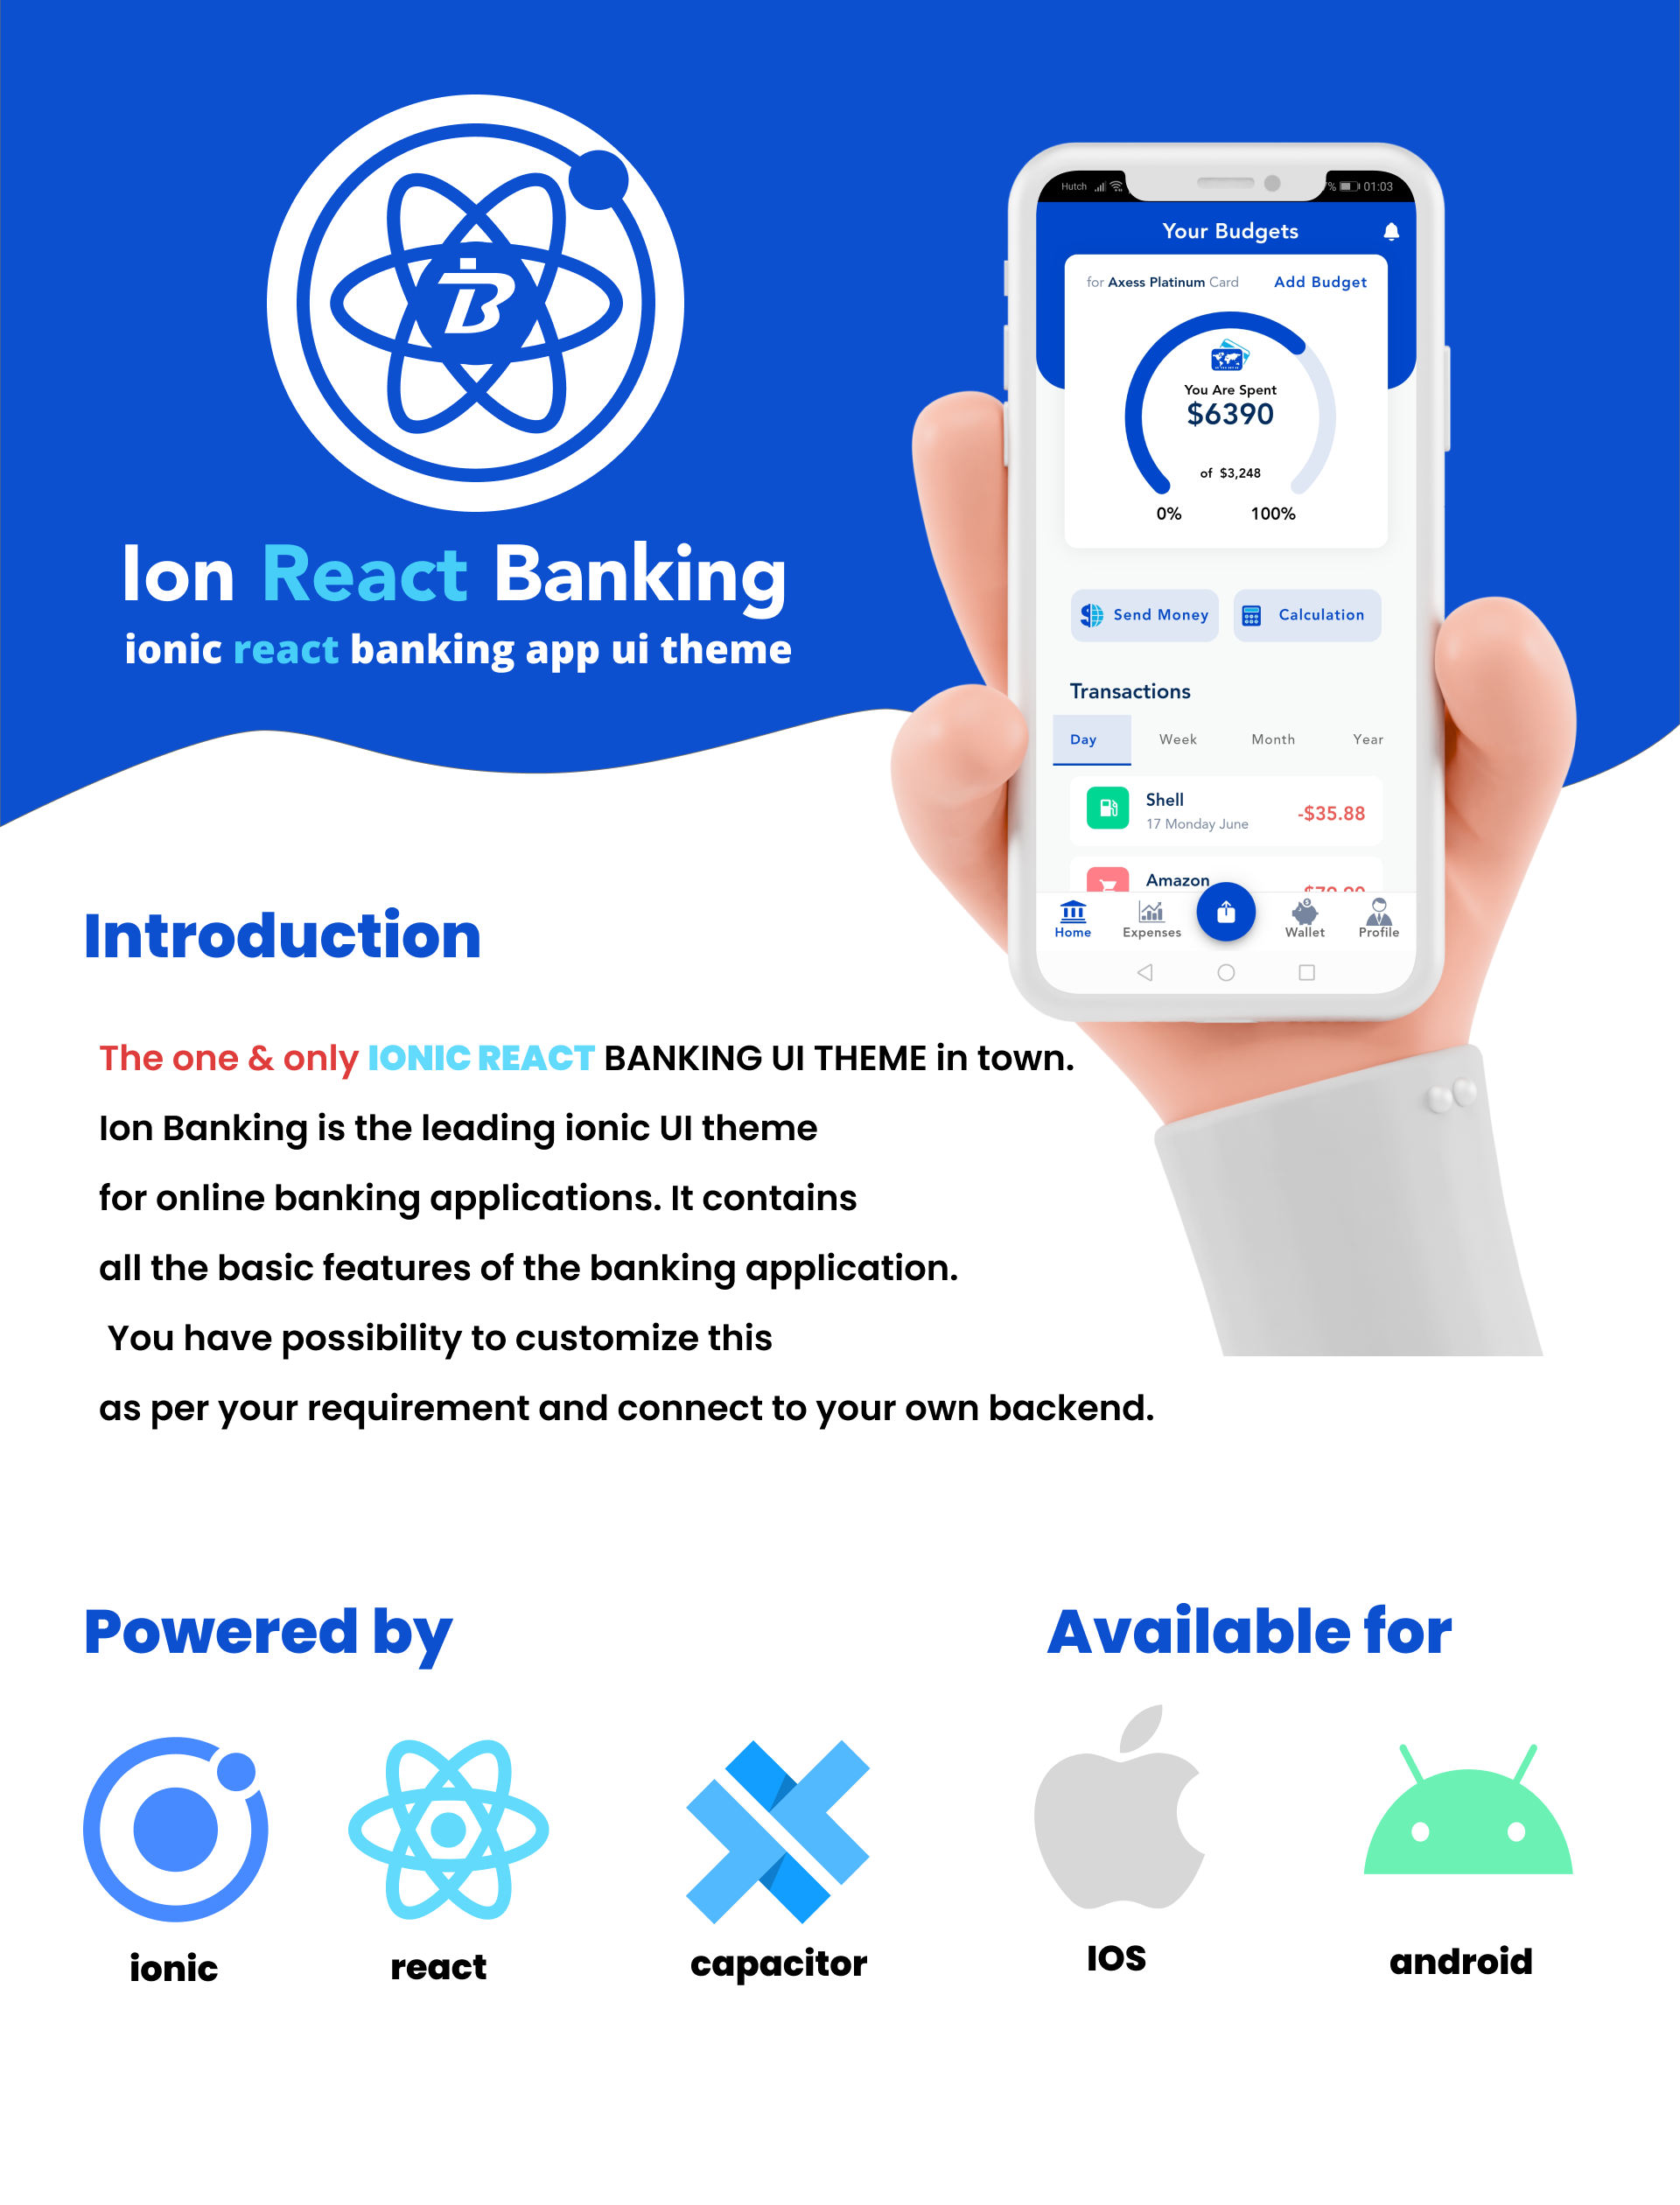 Ion React Banking – iyonik tepki bankacılık uygulaması kullanıcı arayüzü teması